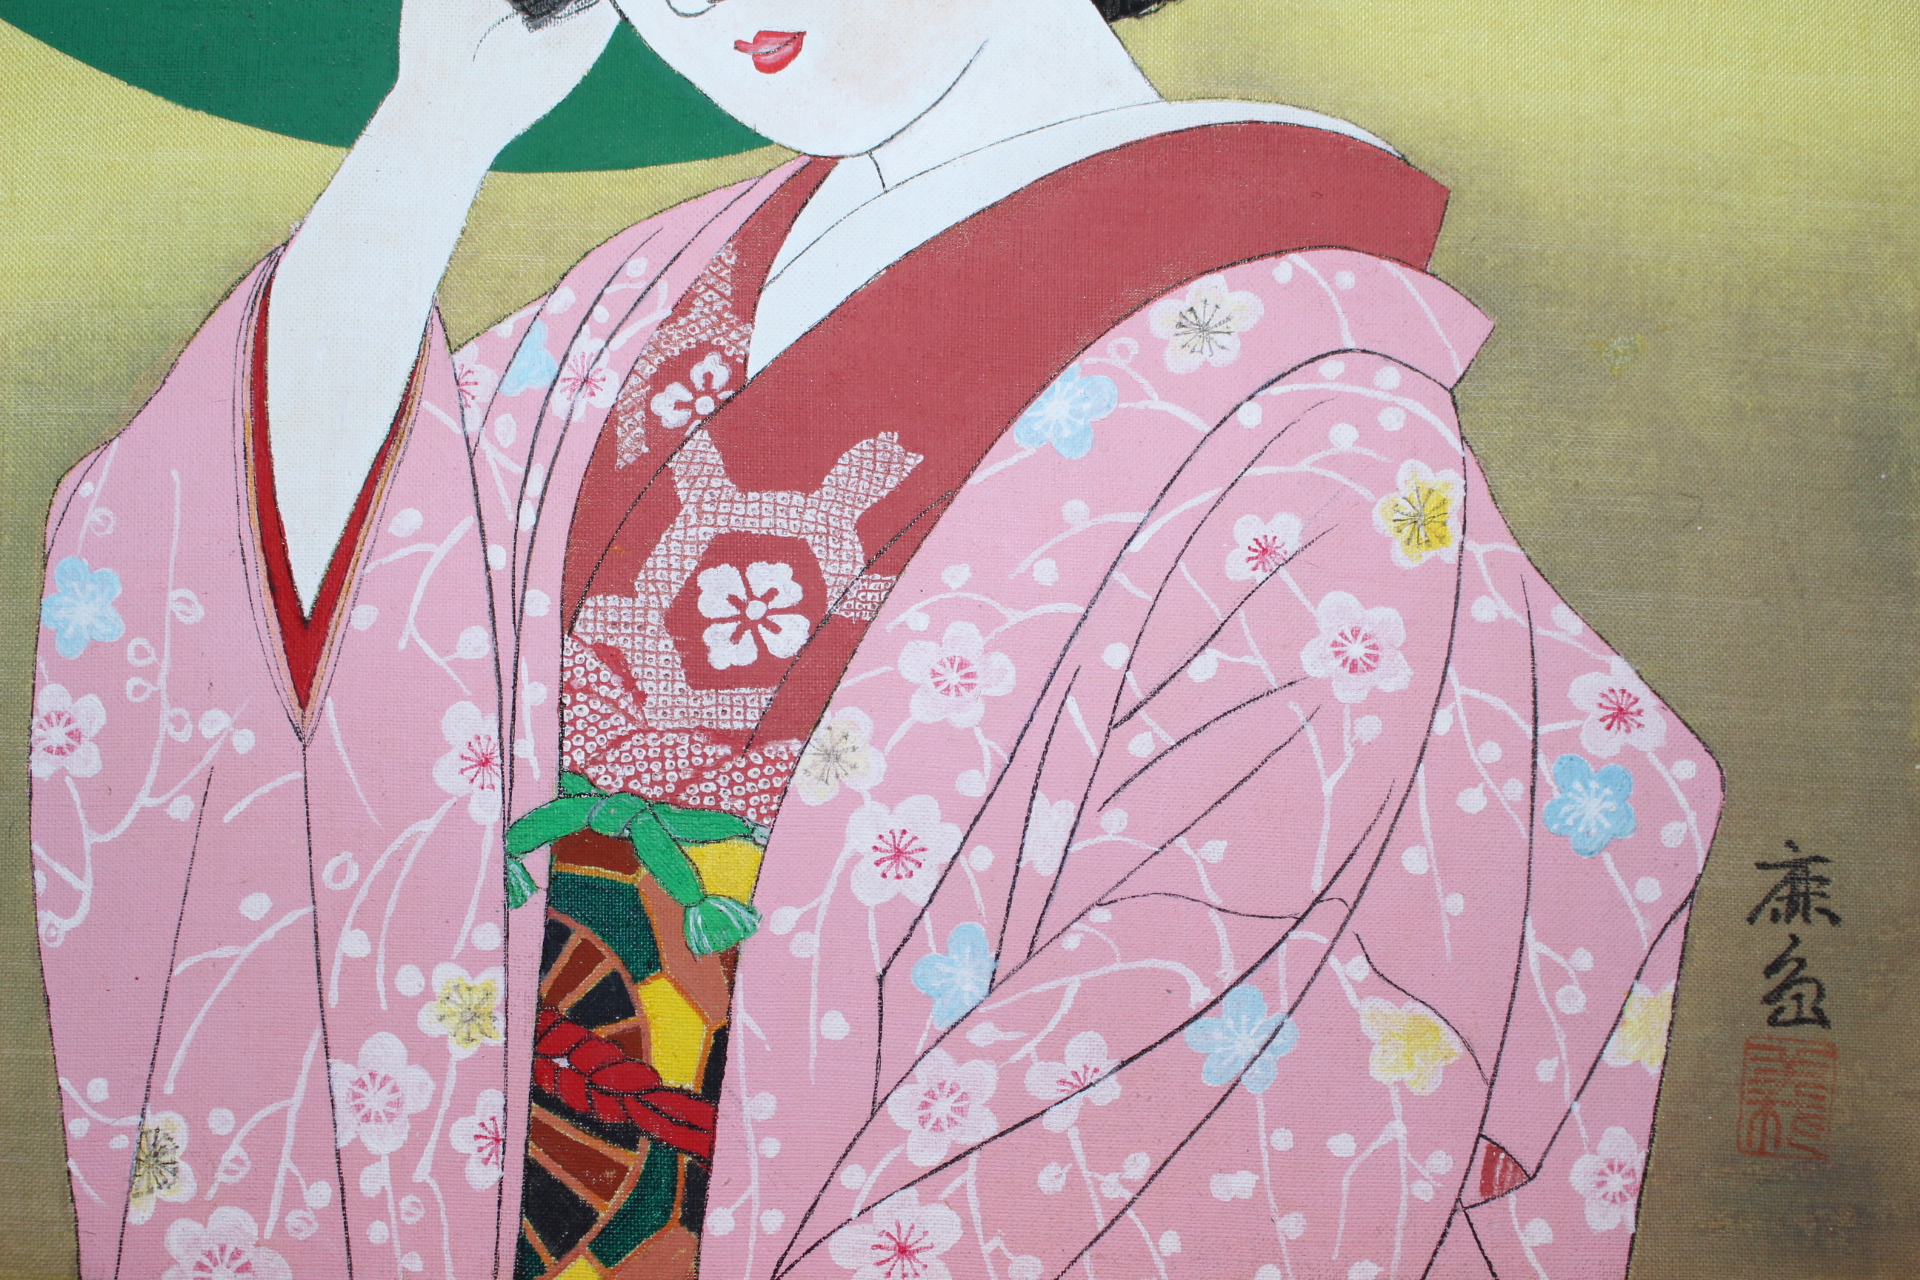 일본전통공예화가의 작품 13